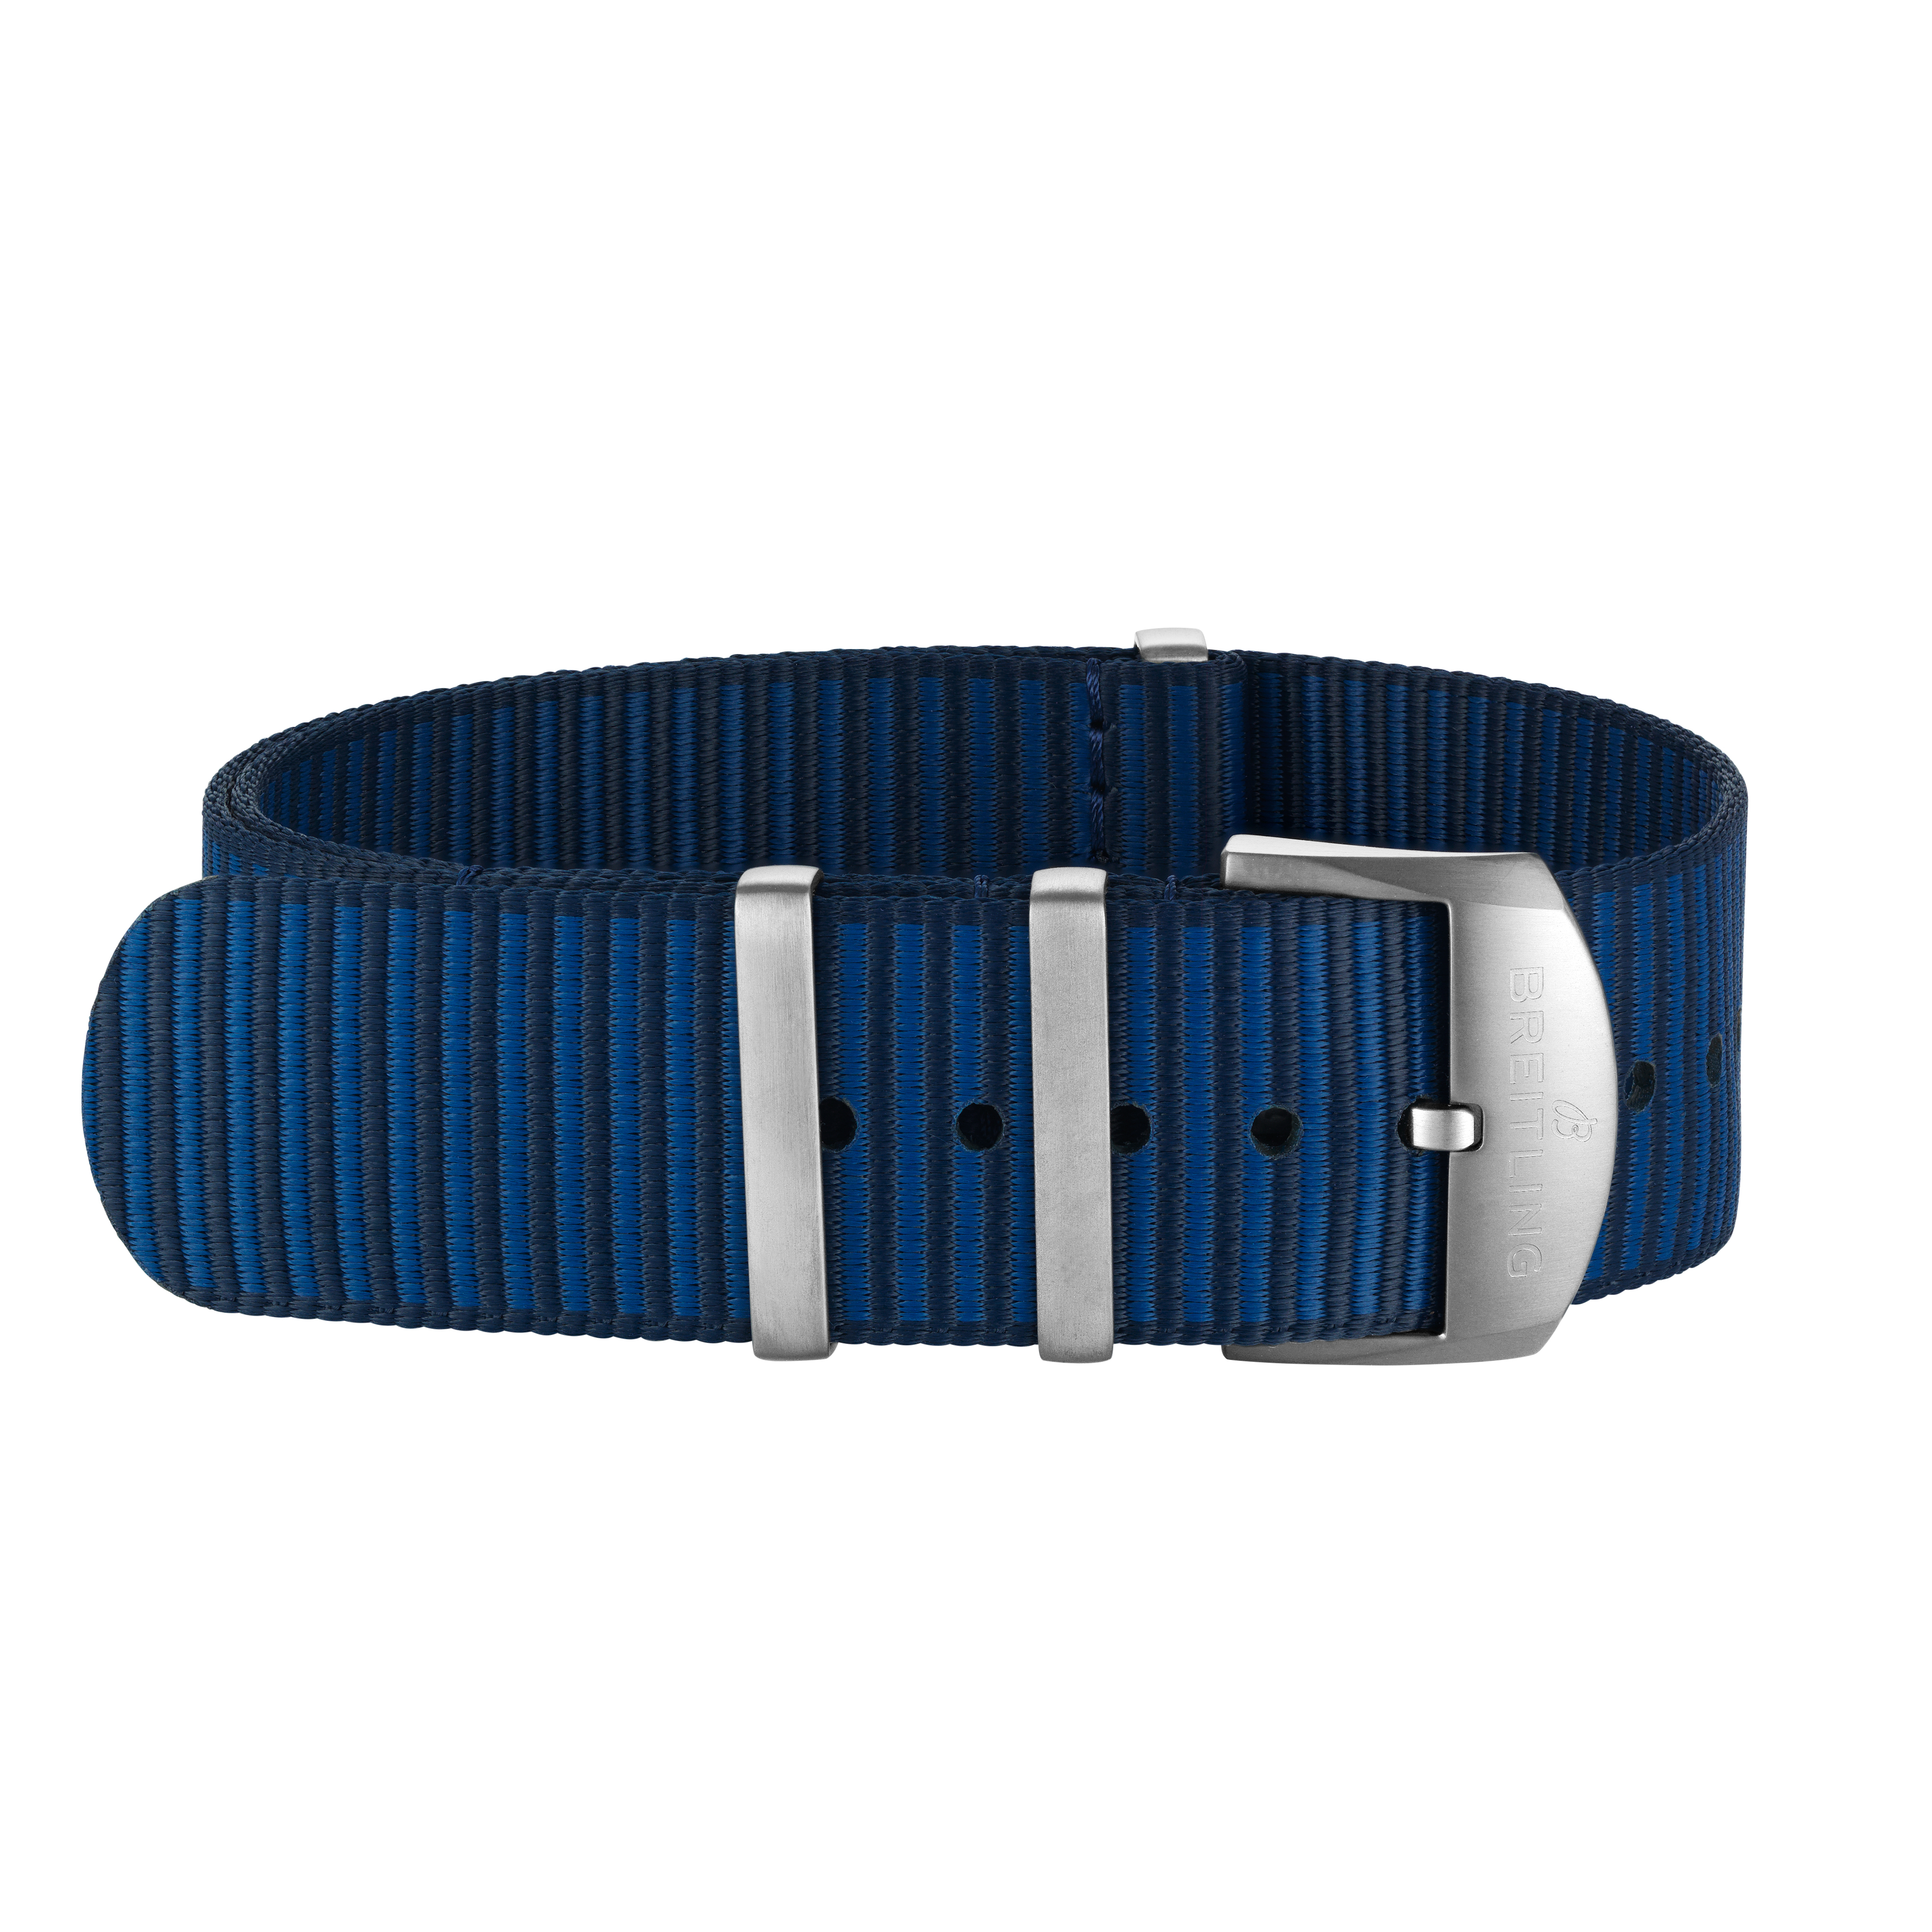 Bracelet une pièce Outerknown en fil ECONYL® bleu foncé (avec passants en acier inoxydable) - 20 mm